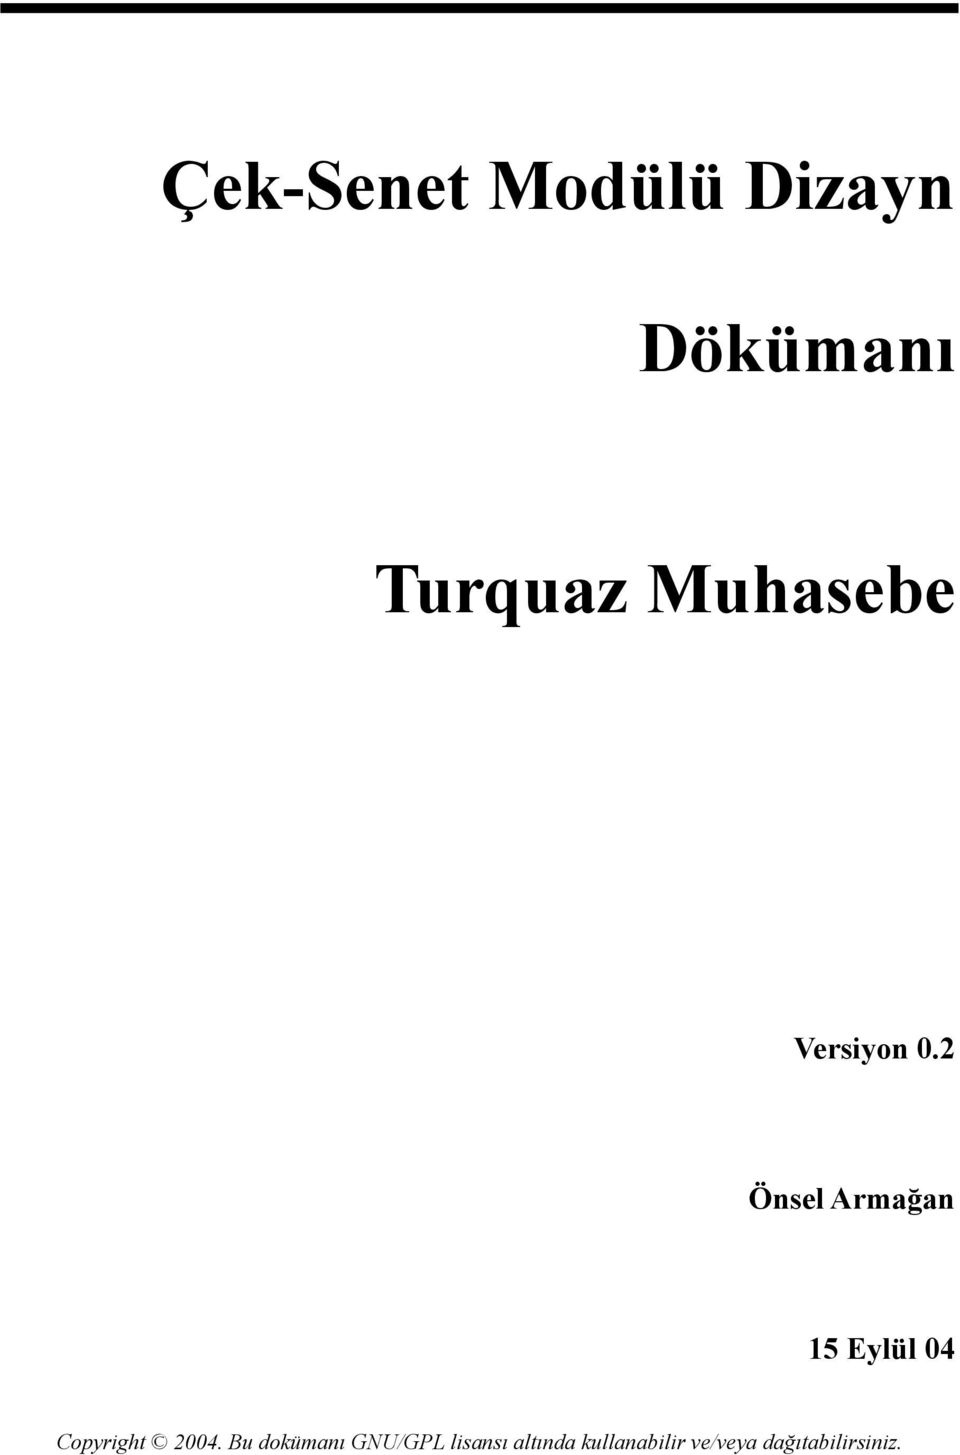 Turquaz Muhasebe